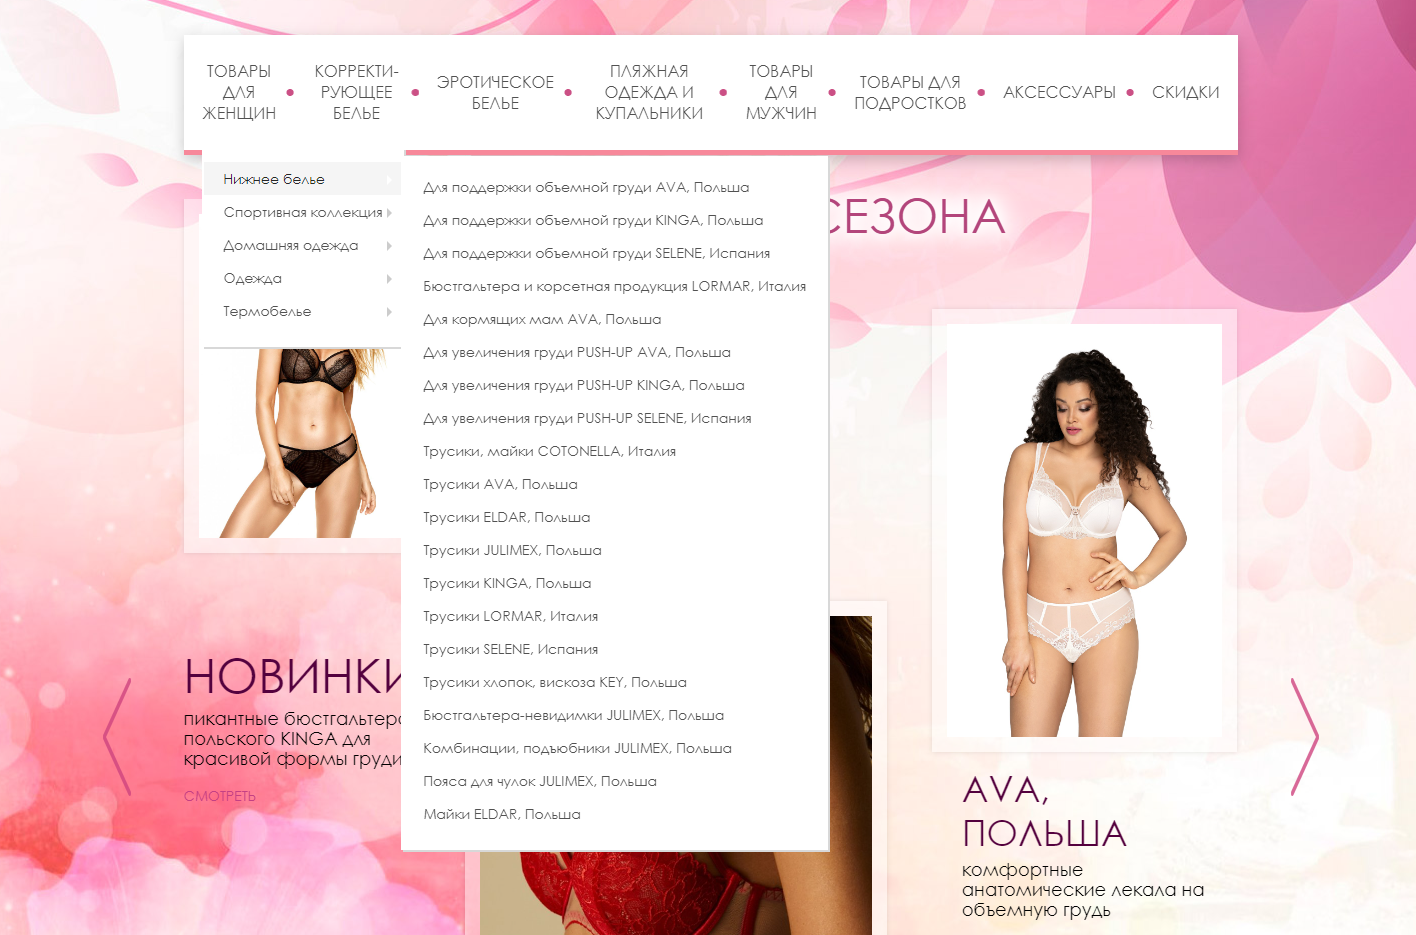 Женское нижнее кружевное, красивое белье в Алматы купить в интернет магазине, цены и фото